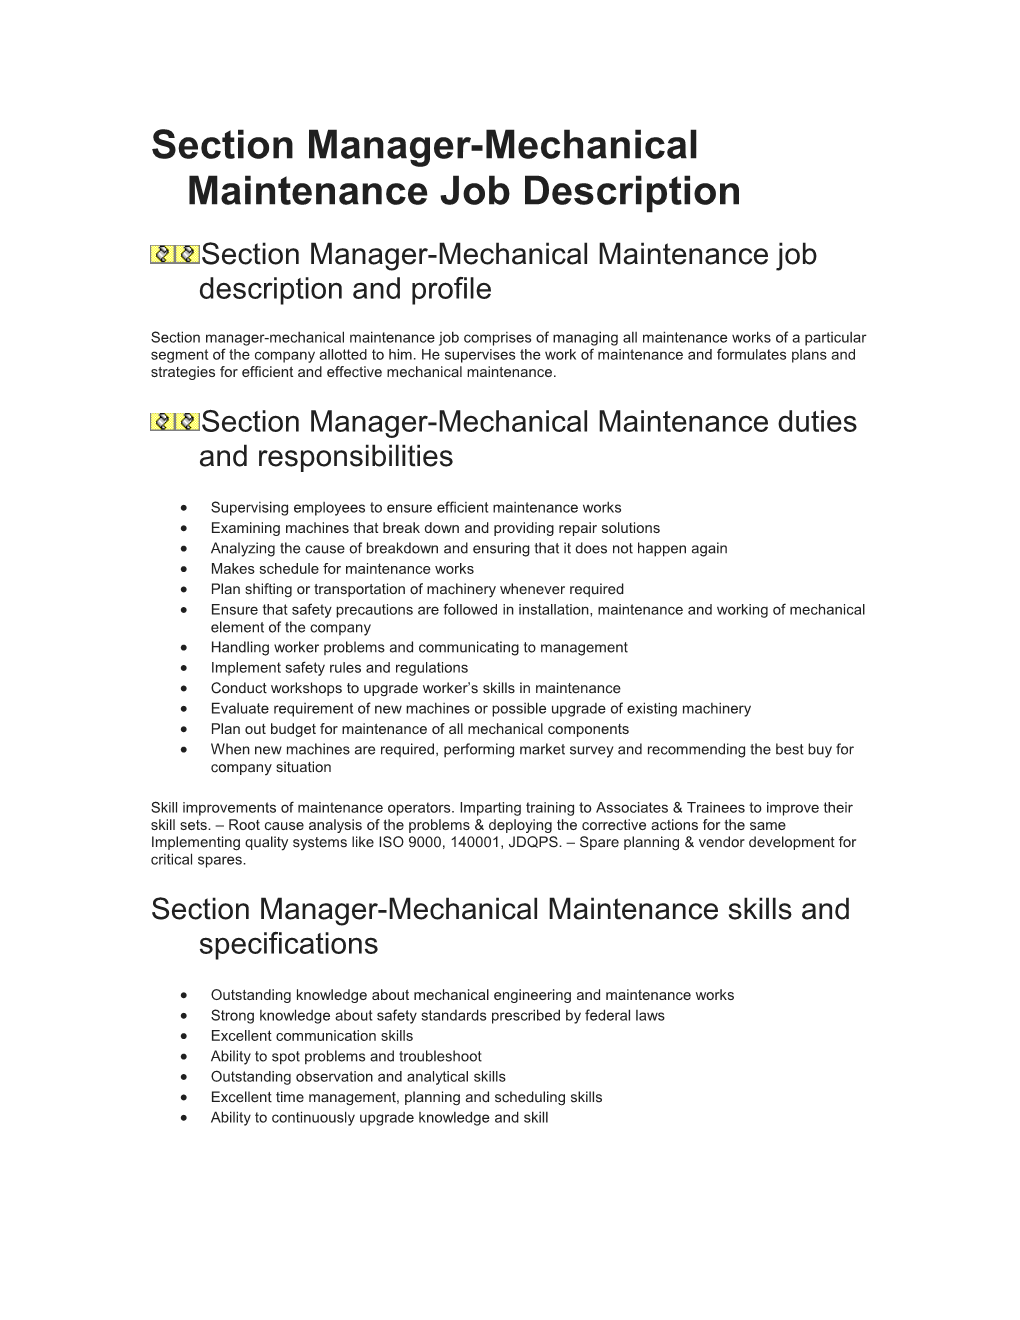 Section Manager-Mechanical Maintenance Job Description